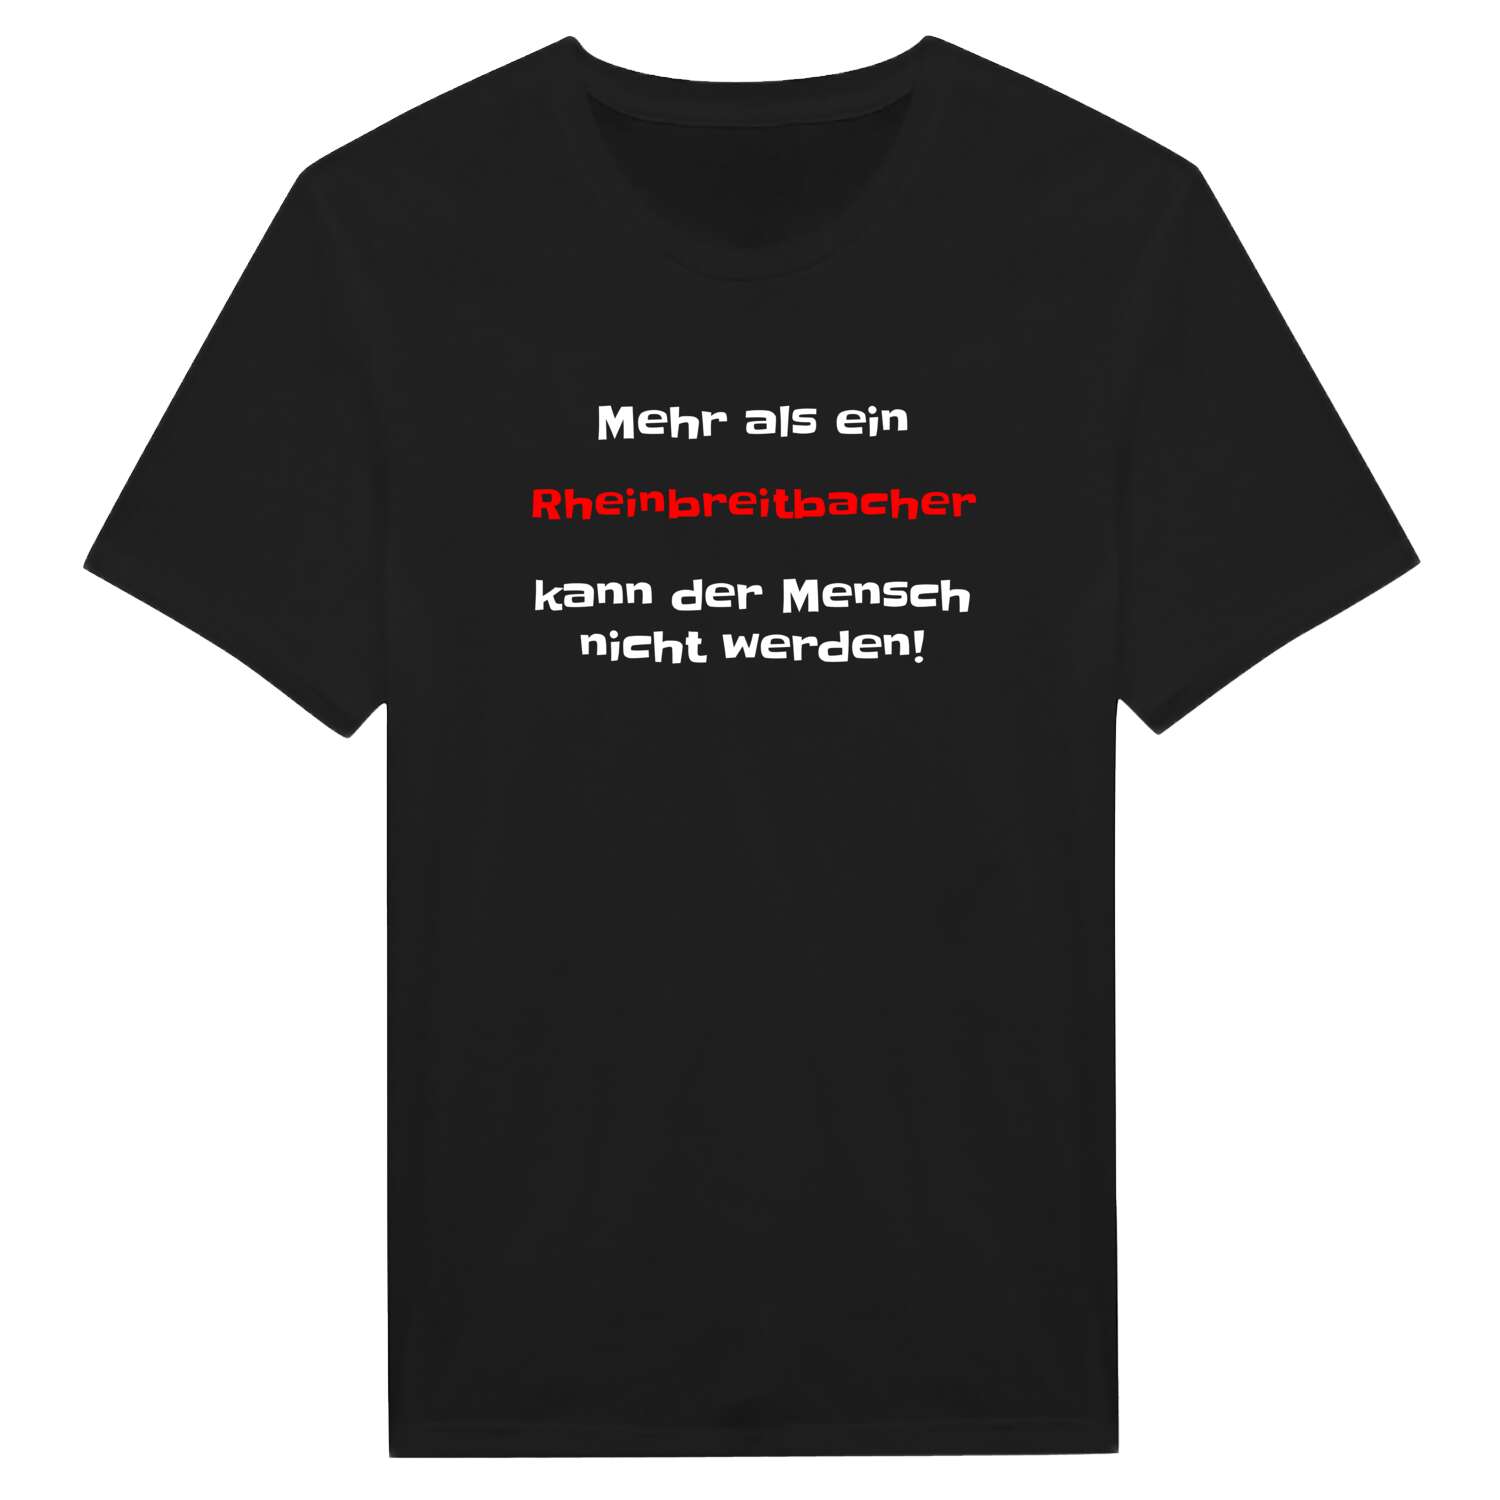 Rheinbreitbach T-Shirt »Mehr als ein«